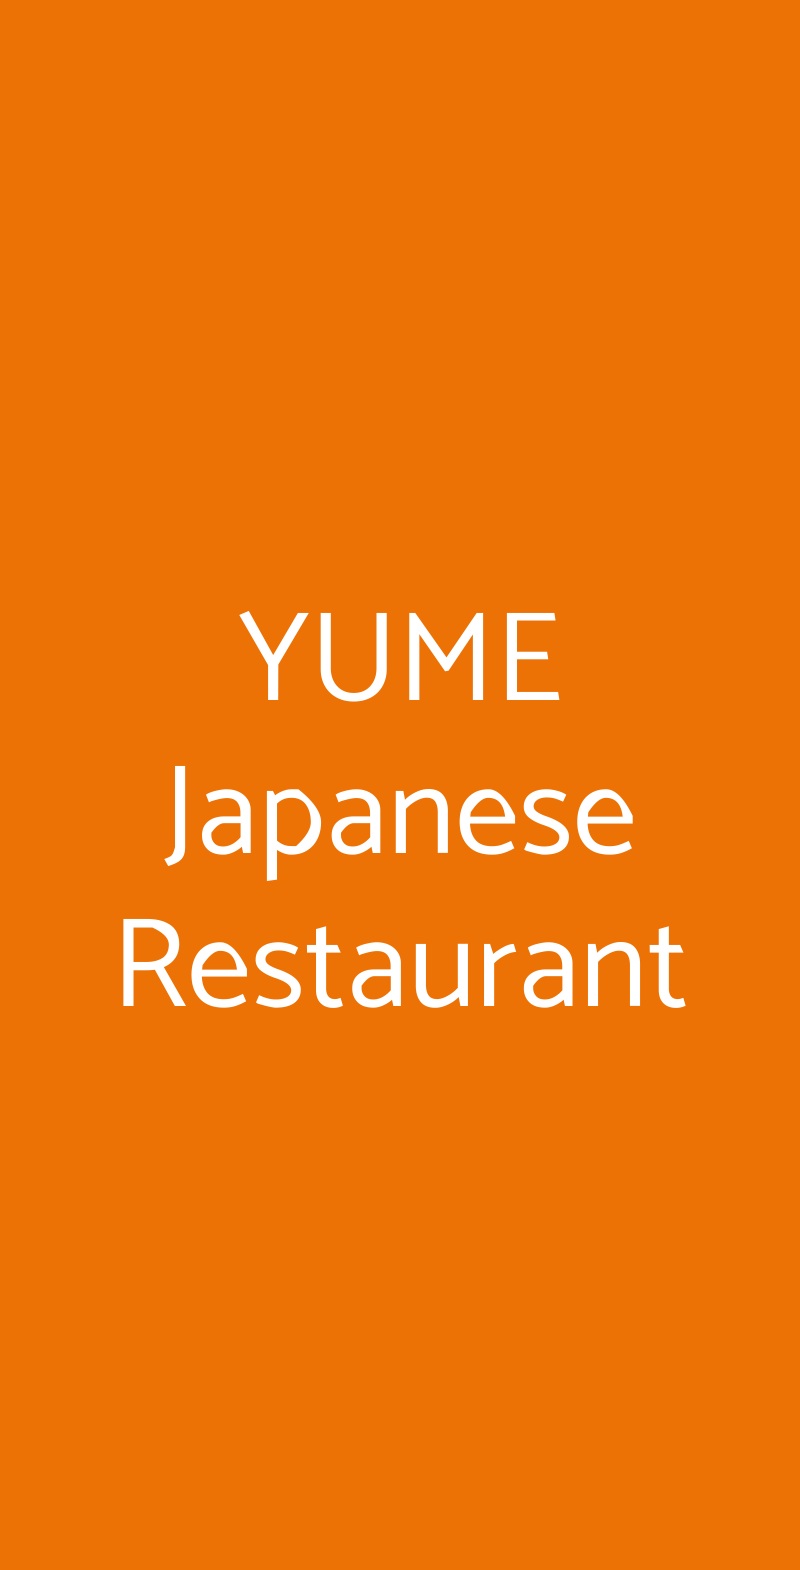 YUME Japanese Restaurant Lissone menù 1 pagina